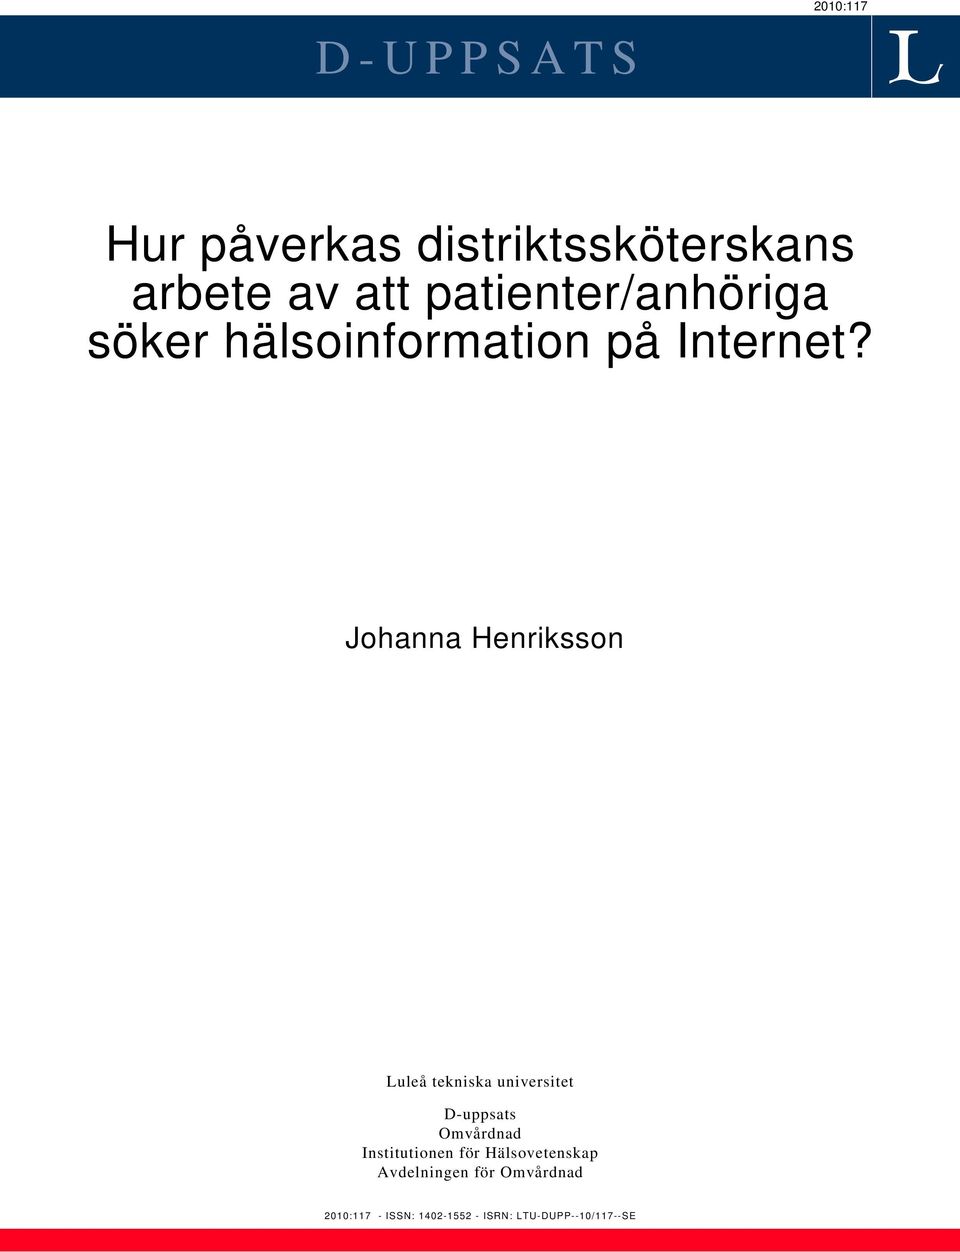 Johanna Henriksson Luleå tekniska universitet D-uppsats Omvårdnad